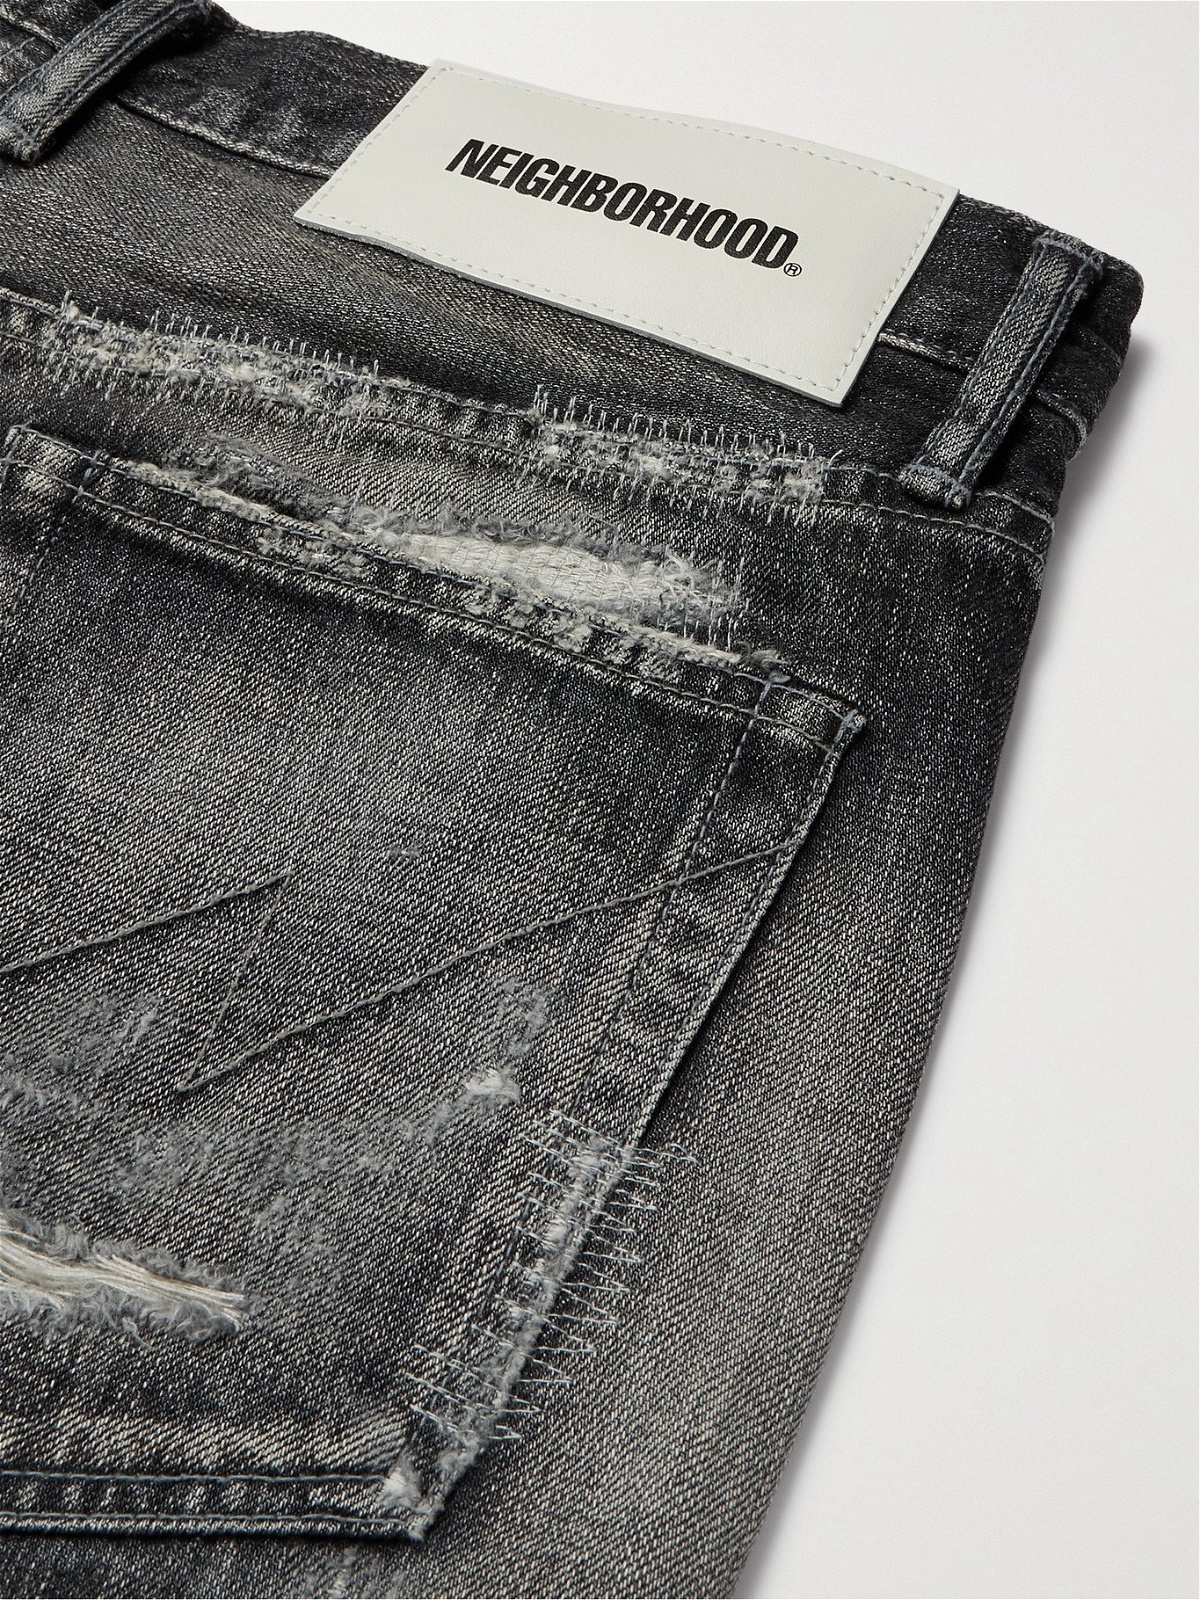 NEIGHBORHOOD   Distressed Denim Jeans   Black   S Neighborhood